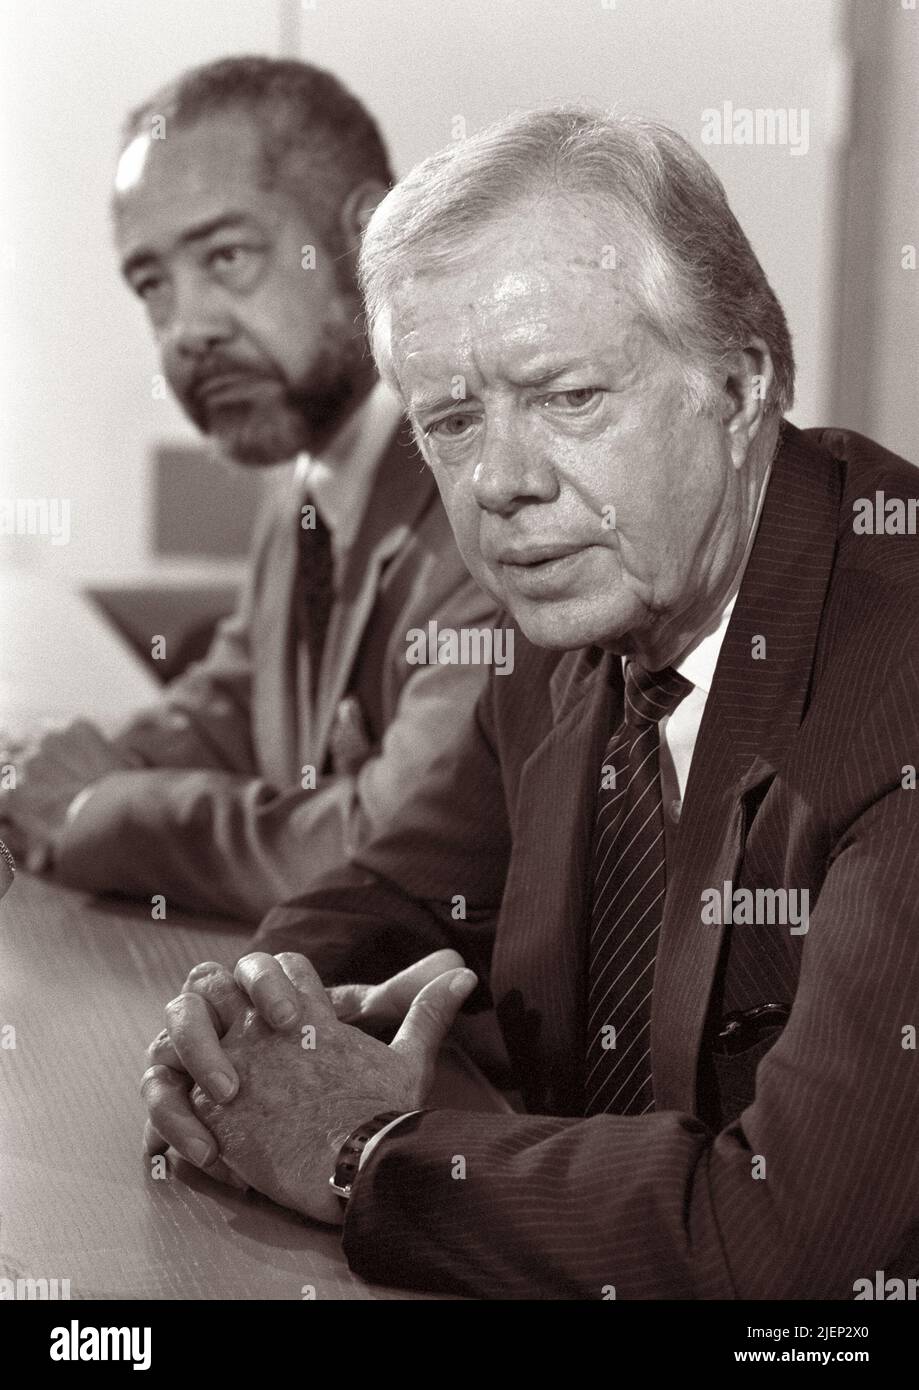 L'ancien président des États-Unis Jimmy carter lors d'une conférence de presse aux pays-Bas à l'aéroport d'Amsterdam Schiphol sur 6 octobre 1988. Banque D'Images